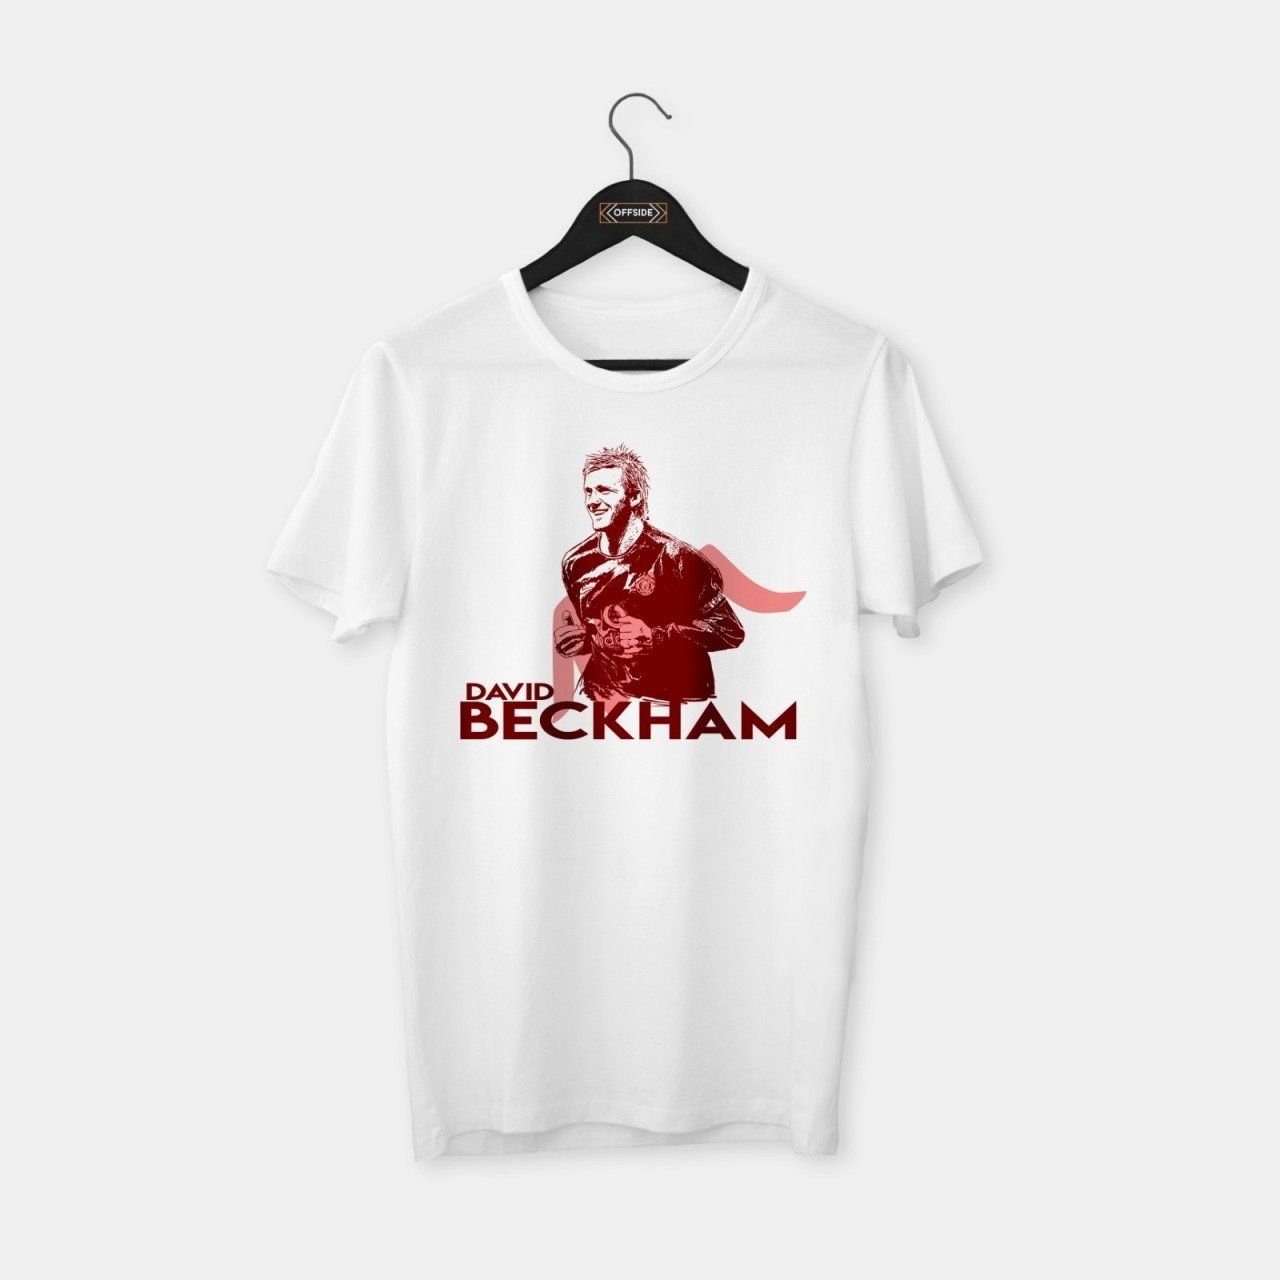 Beckham III T-shirt